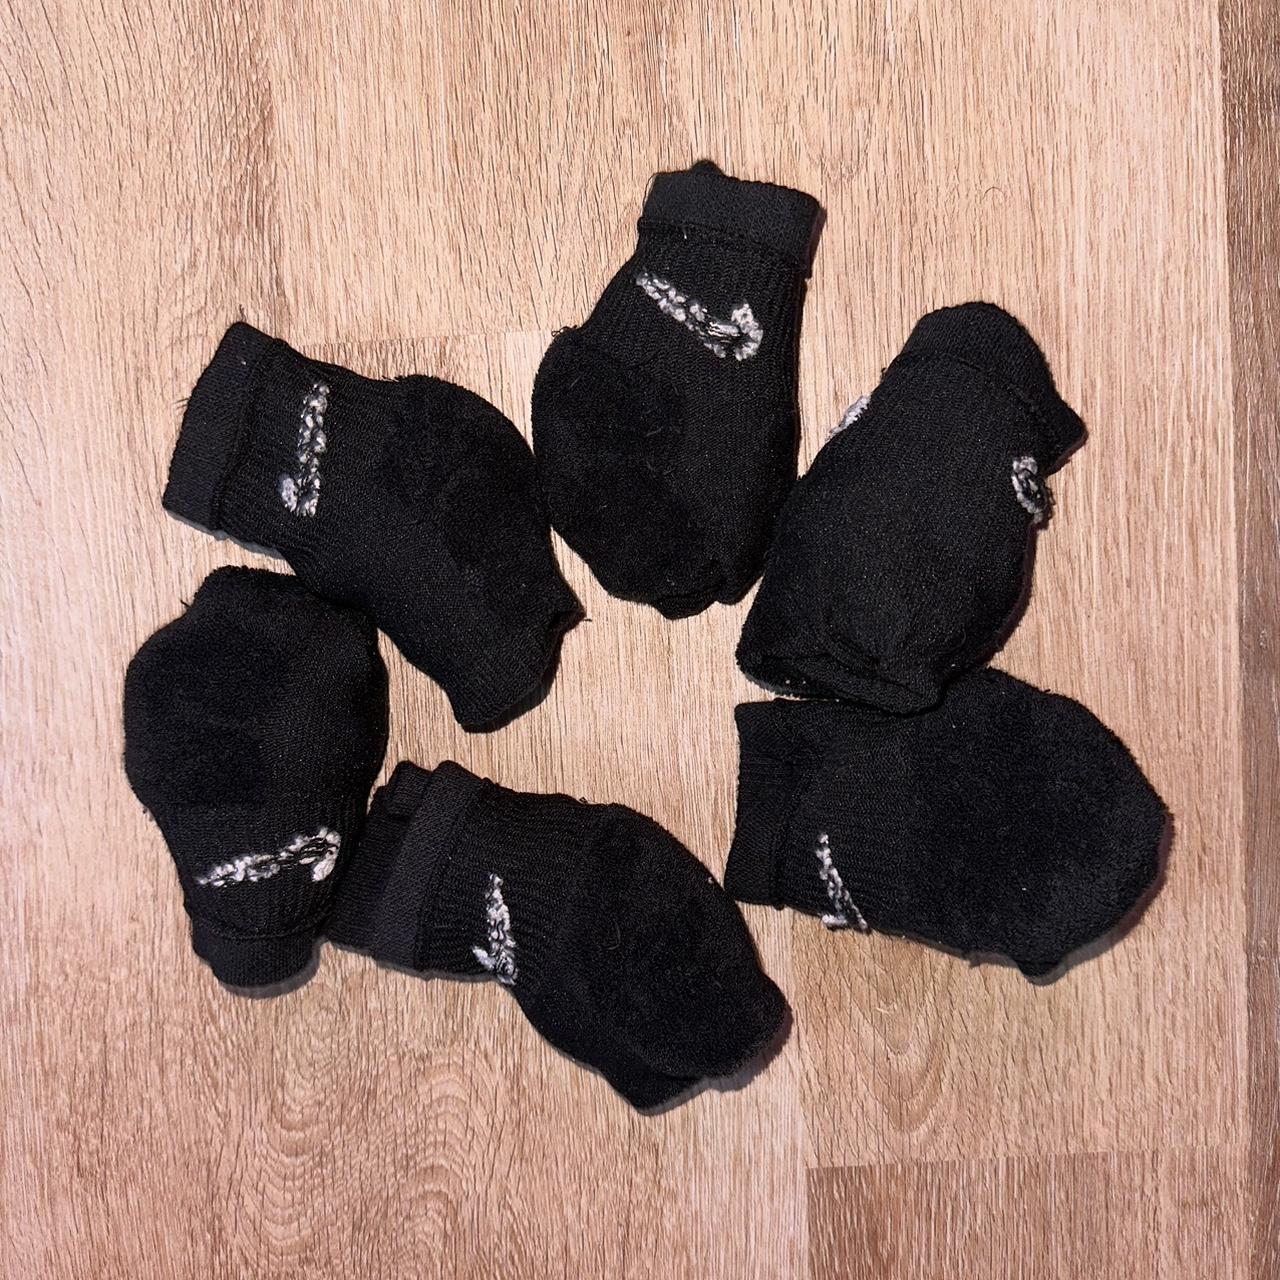 (6 PAIRS) Men’s Black Nike Ankle Socks (6... - Depop